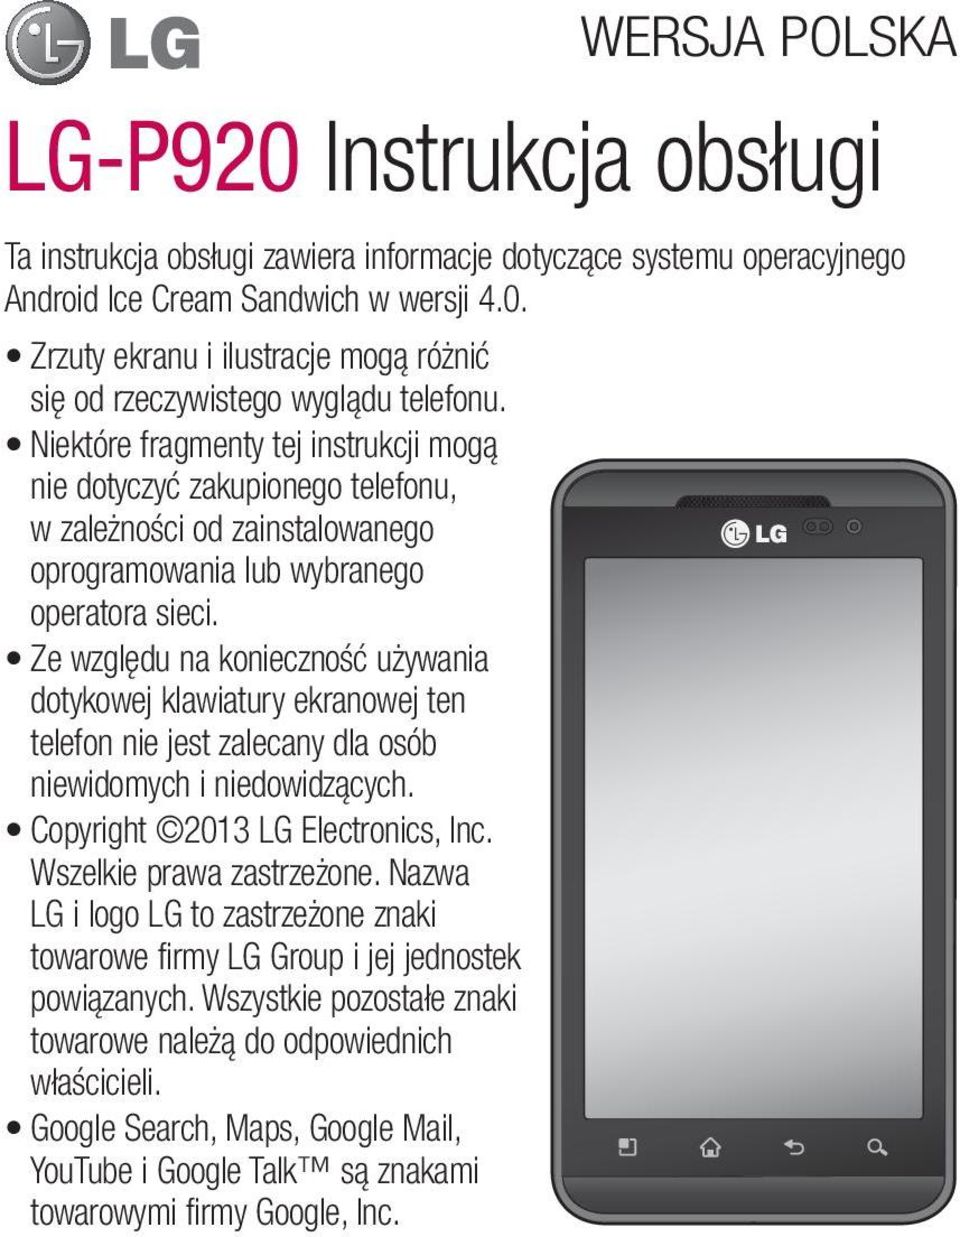 Ze względu na konieczność używania dotykowej klawiatury ekranowej ten telefon nie jest zalecany dla osób niewidomych i niedowidzących. Copyright 2013 LG Electronics, Inc. Wszelkie prawa zastrzeżone.